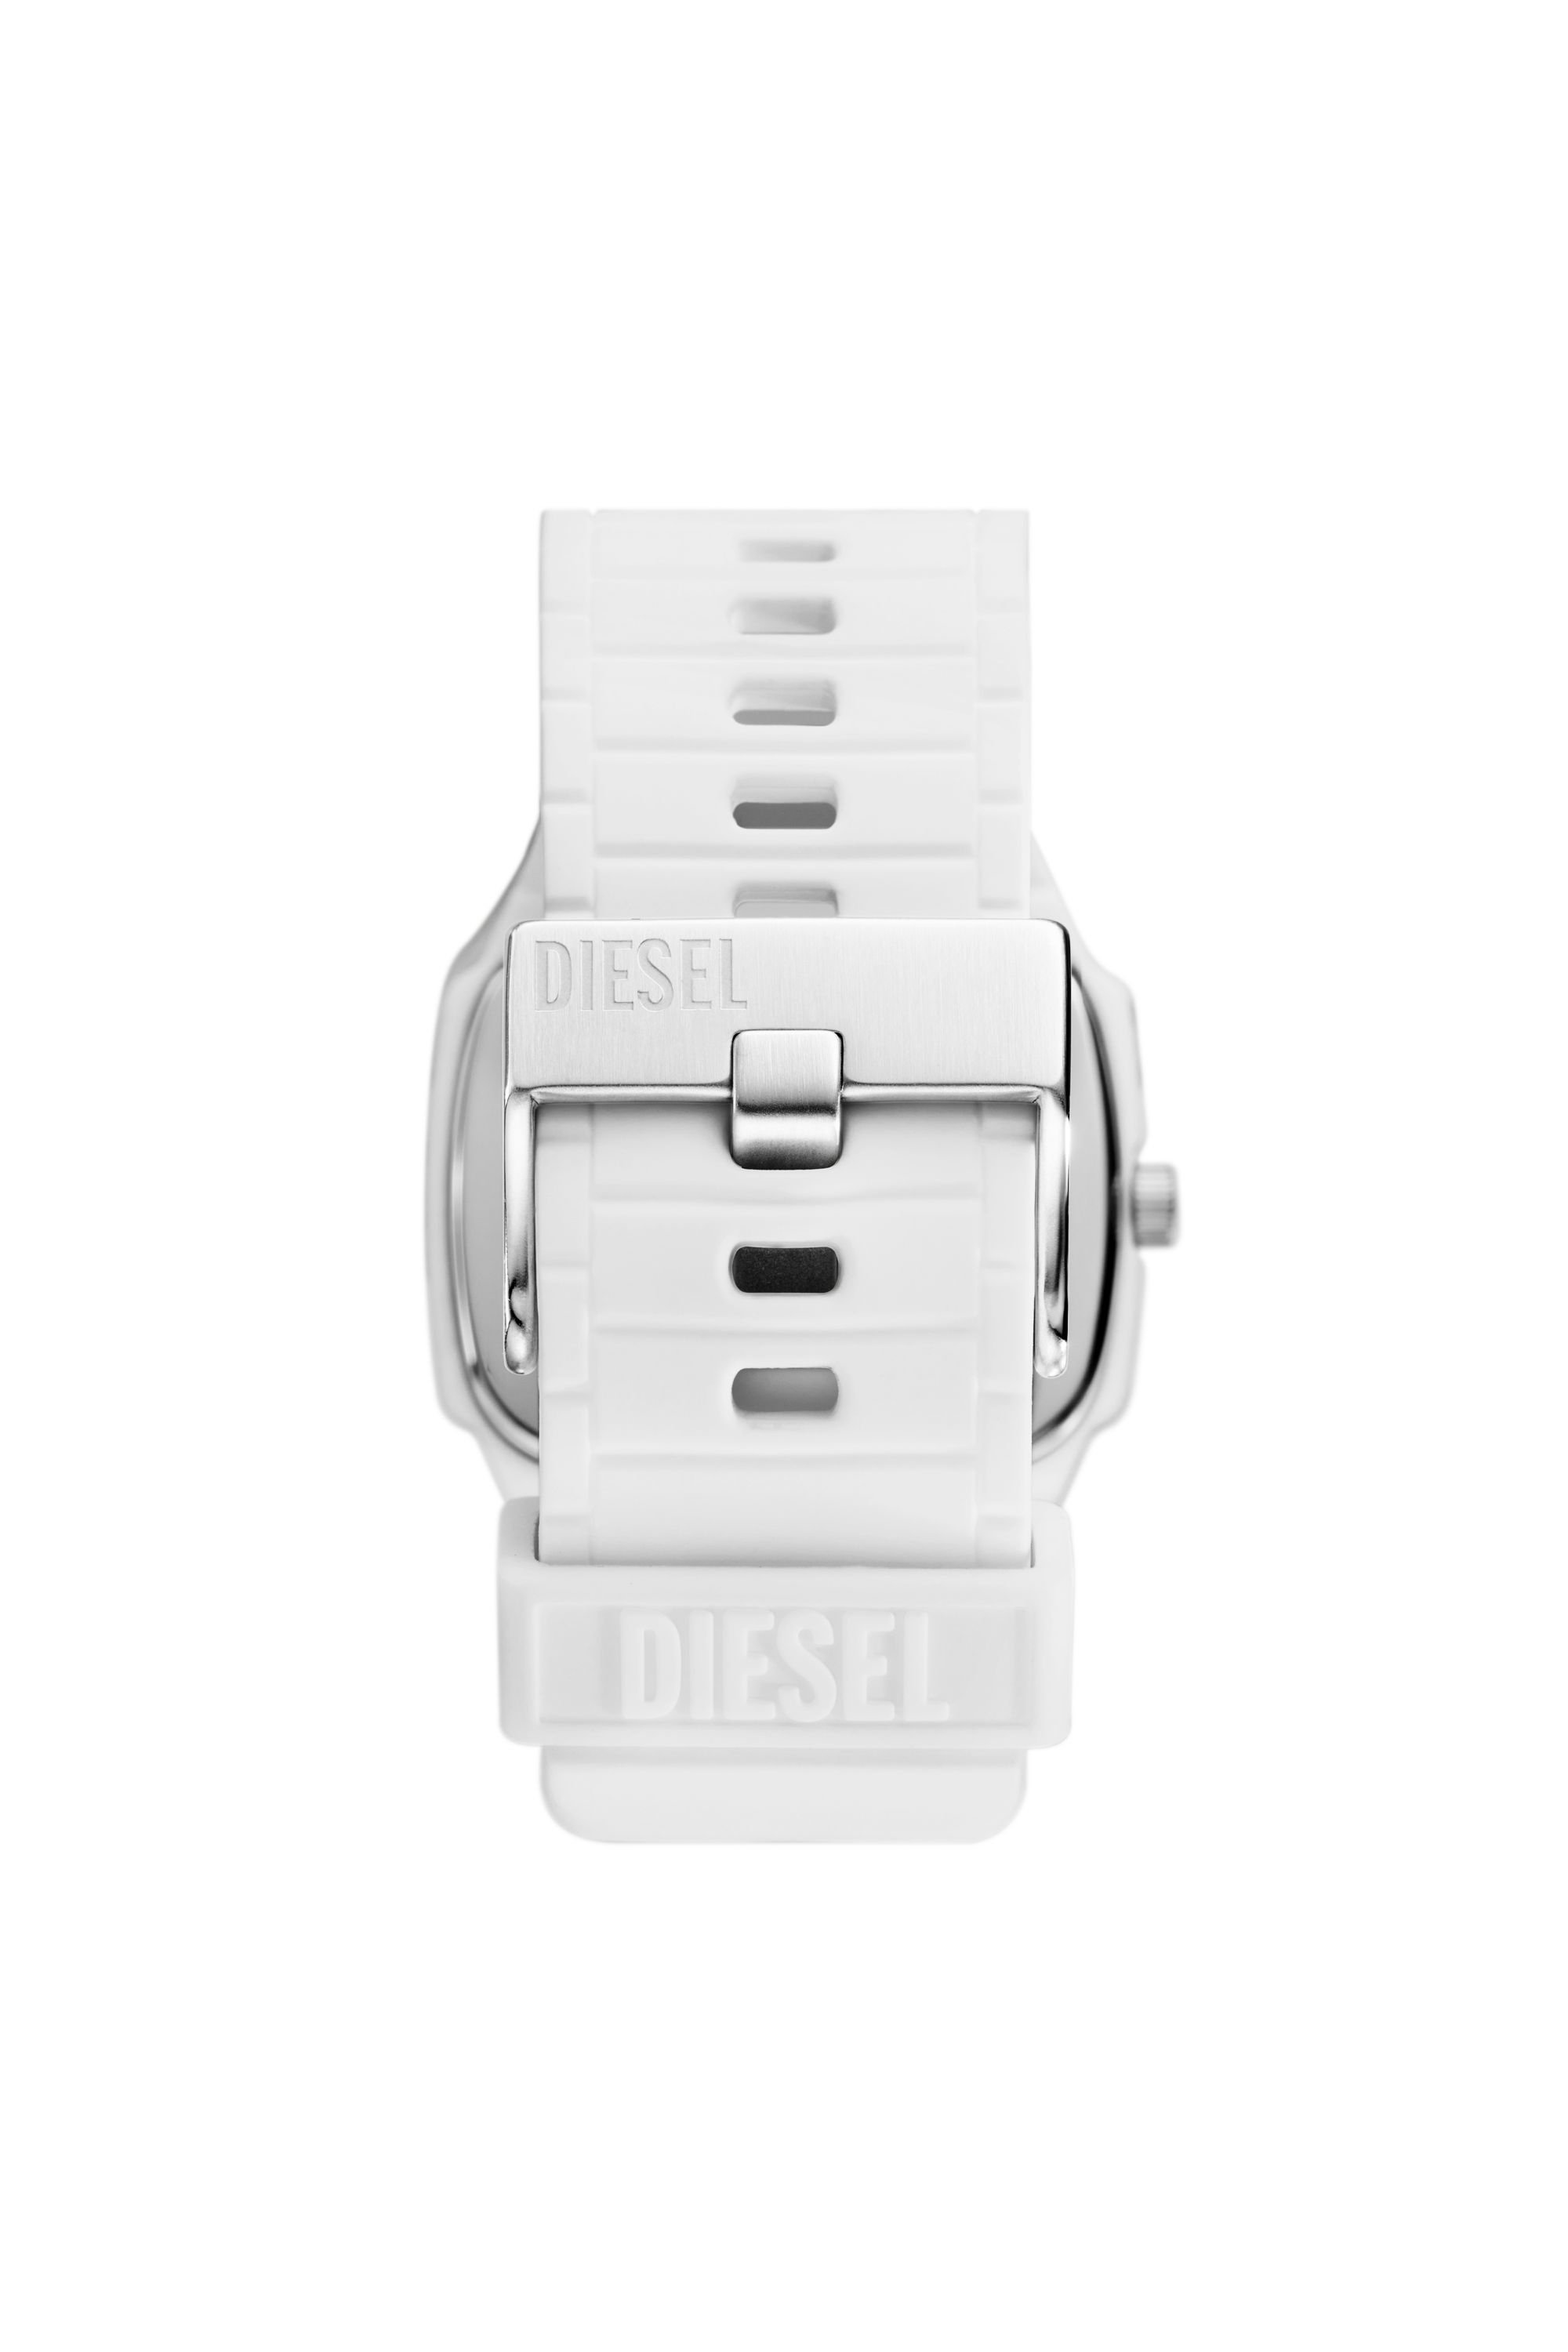 Diesel - DZ2204, White - Image 2